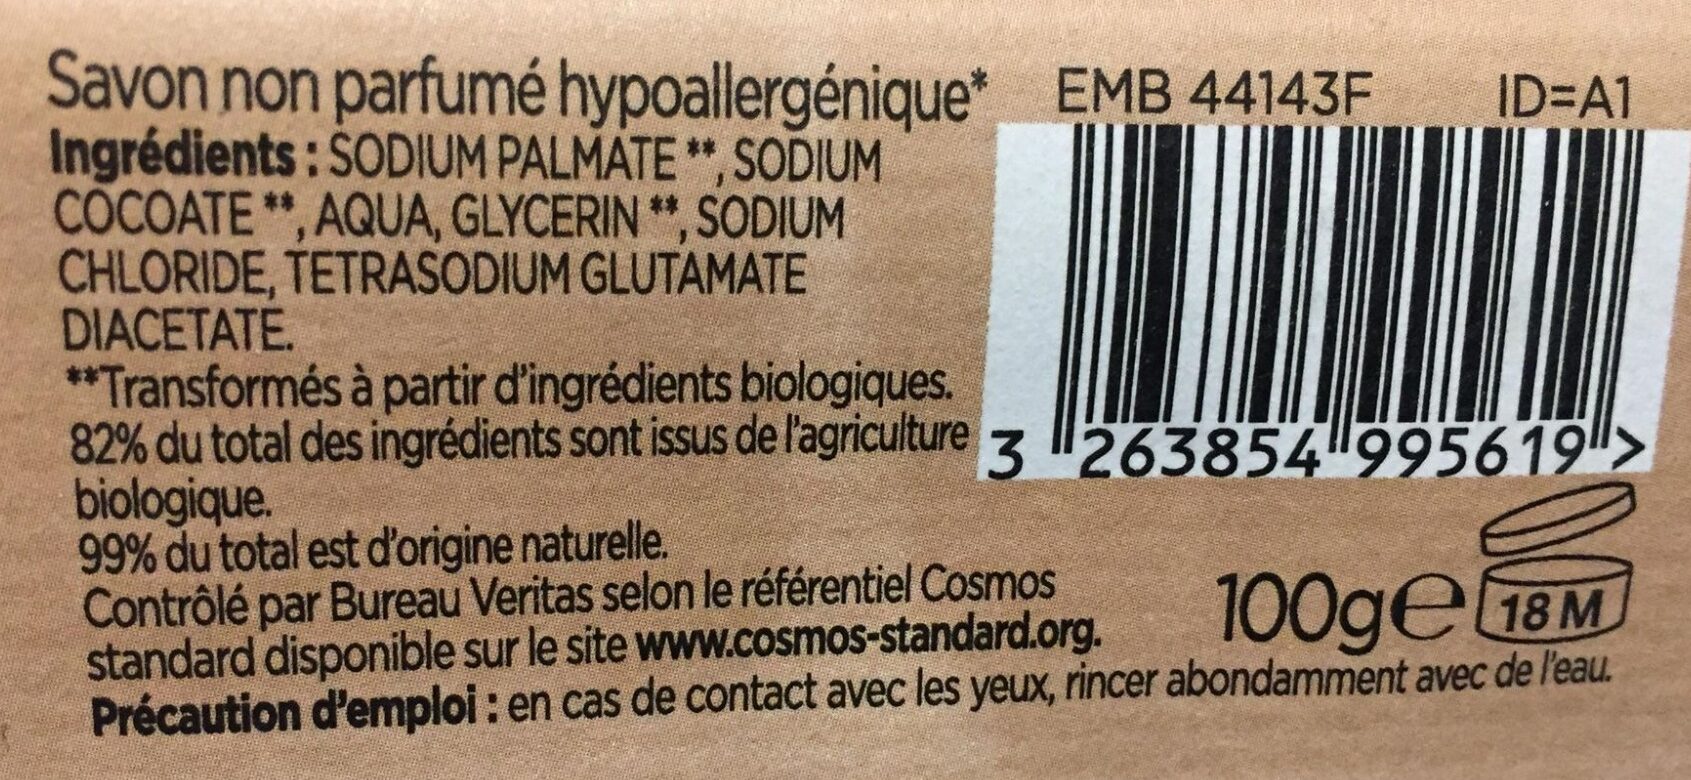 Savon non parfumé hypoallergénique - Ingredients - fr